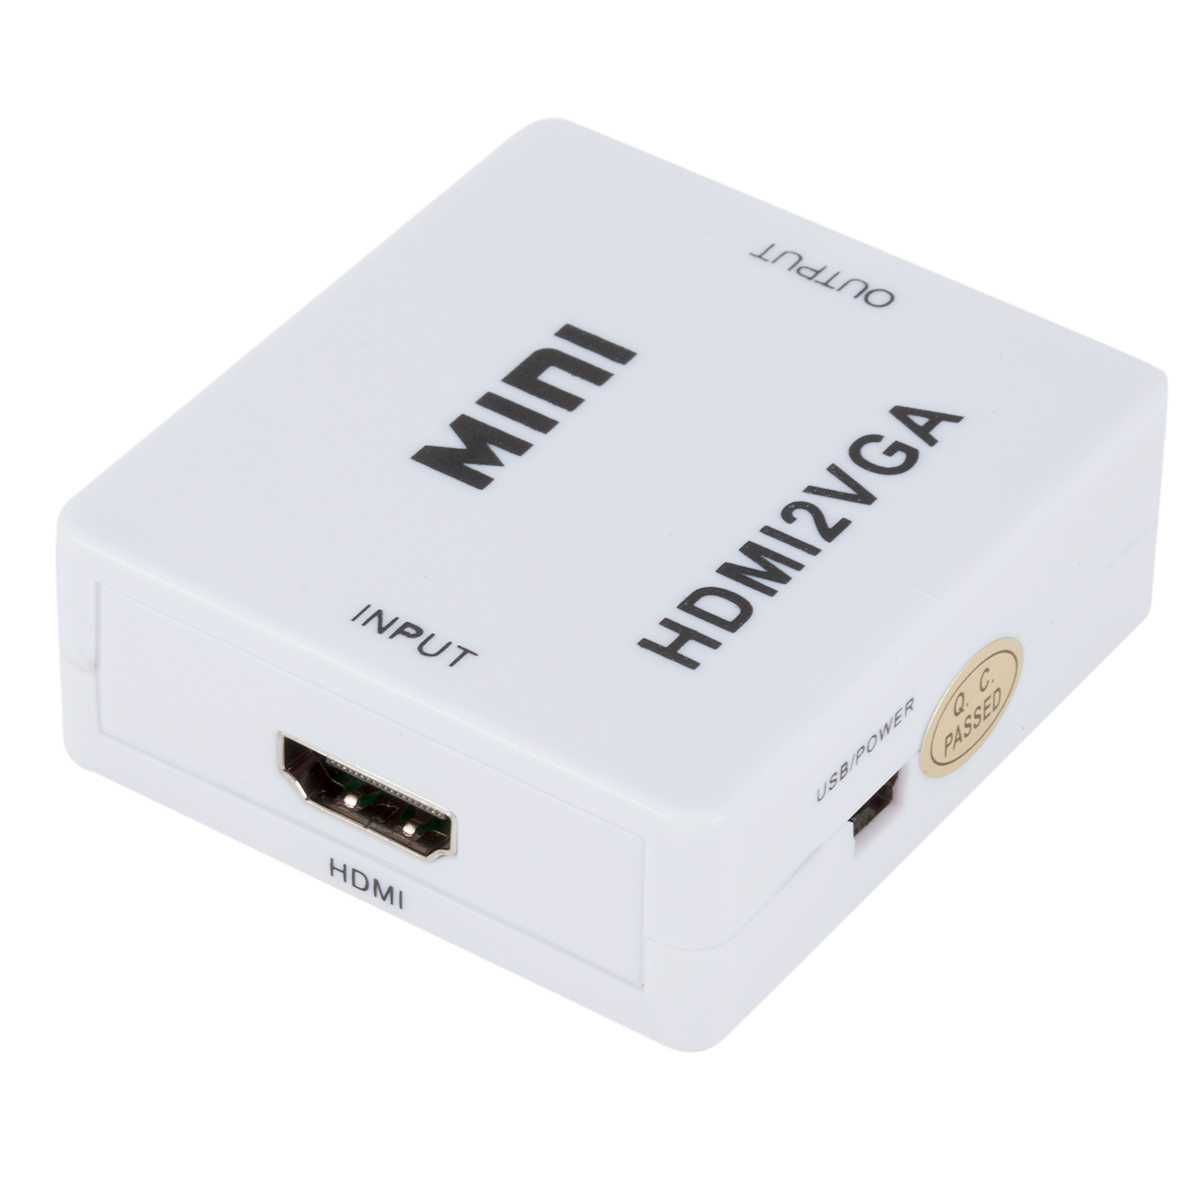 Активен Аудио/Видео конвертор за VGA-HDMI или HDMI-VGA сигнал